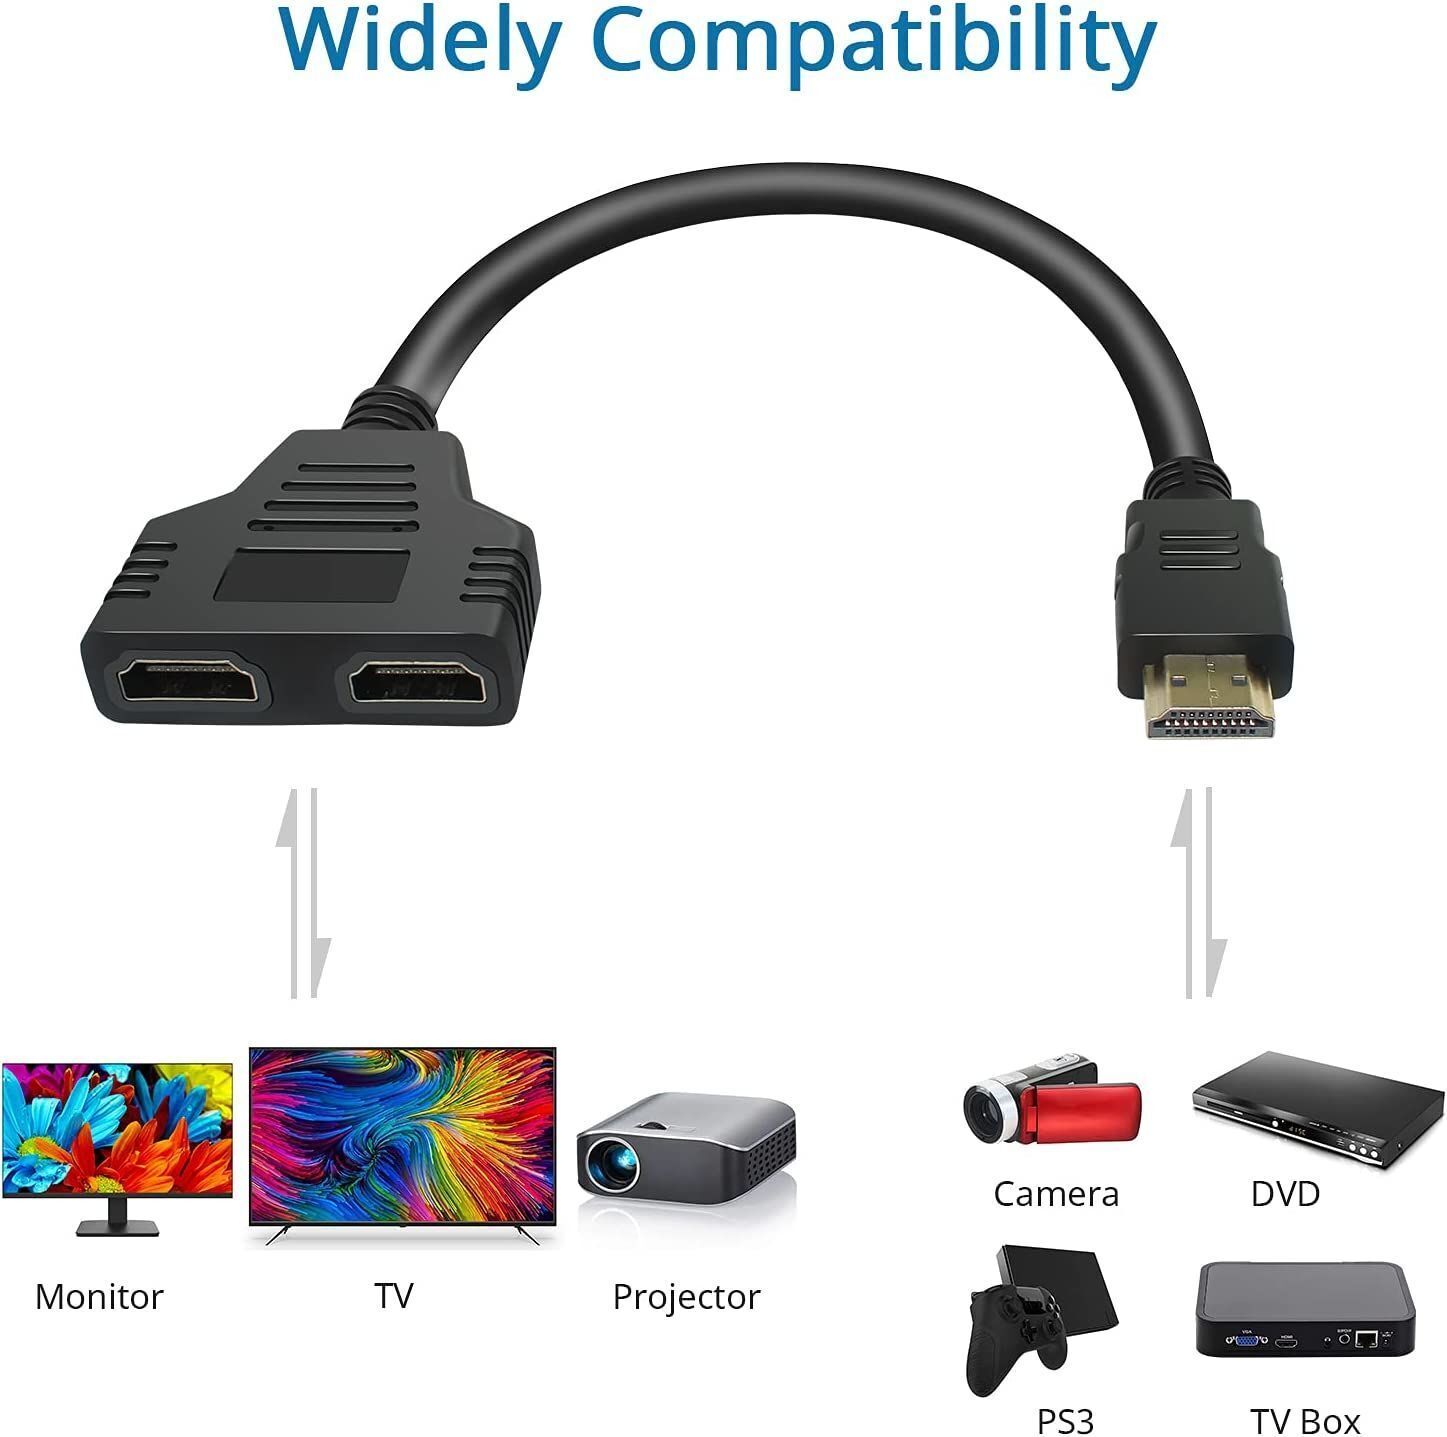 HDMI Mâle Vers Double HDMI Femelle de 1 à 2 Voies Splitter Câble Adaptateur  - Noir